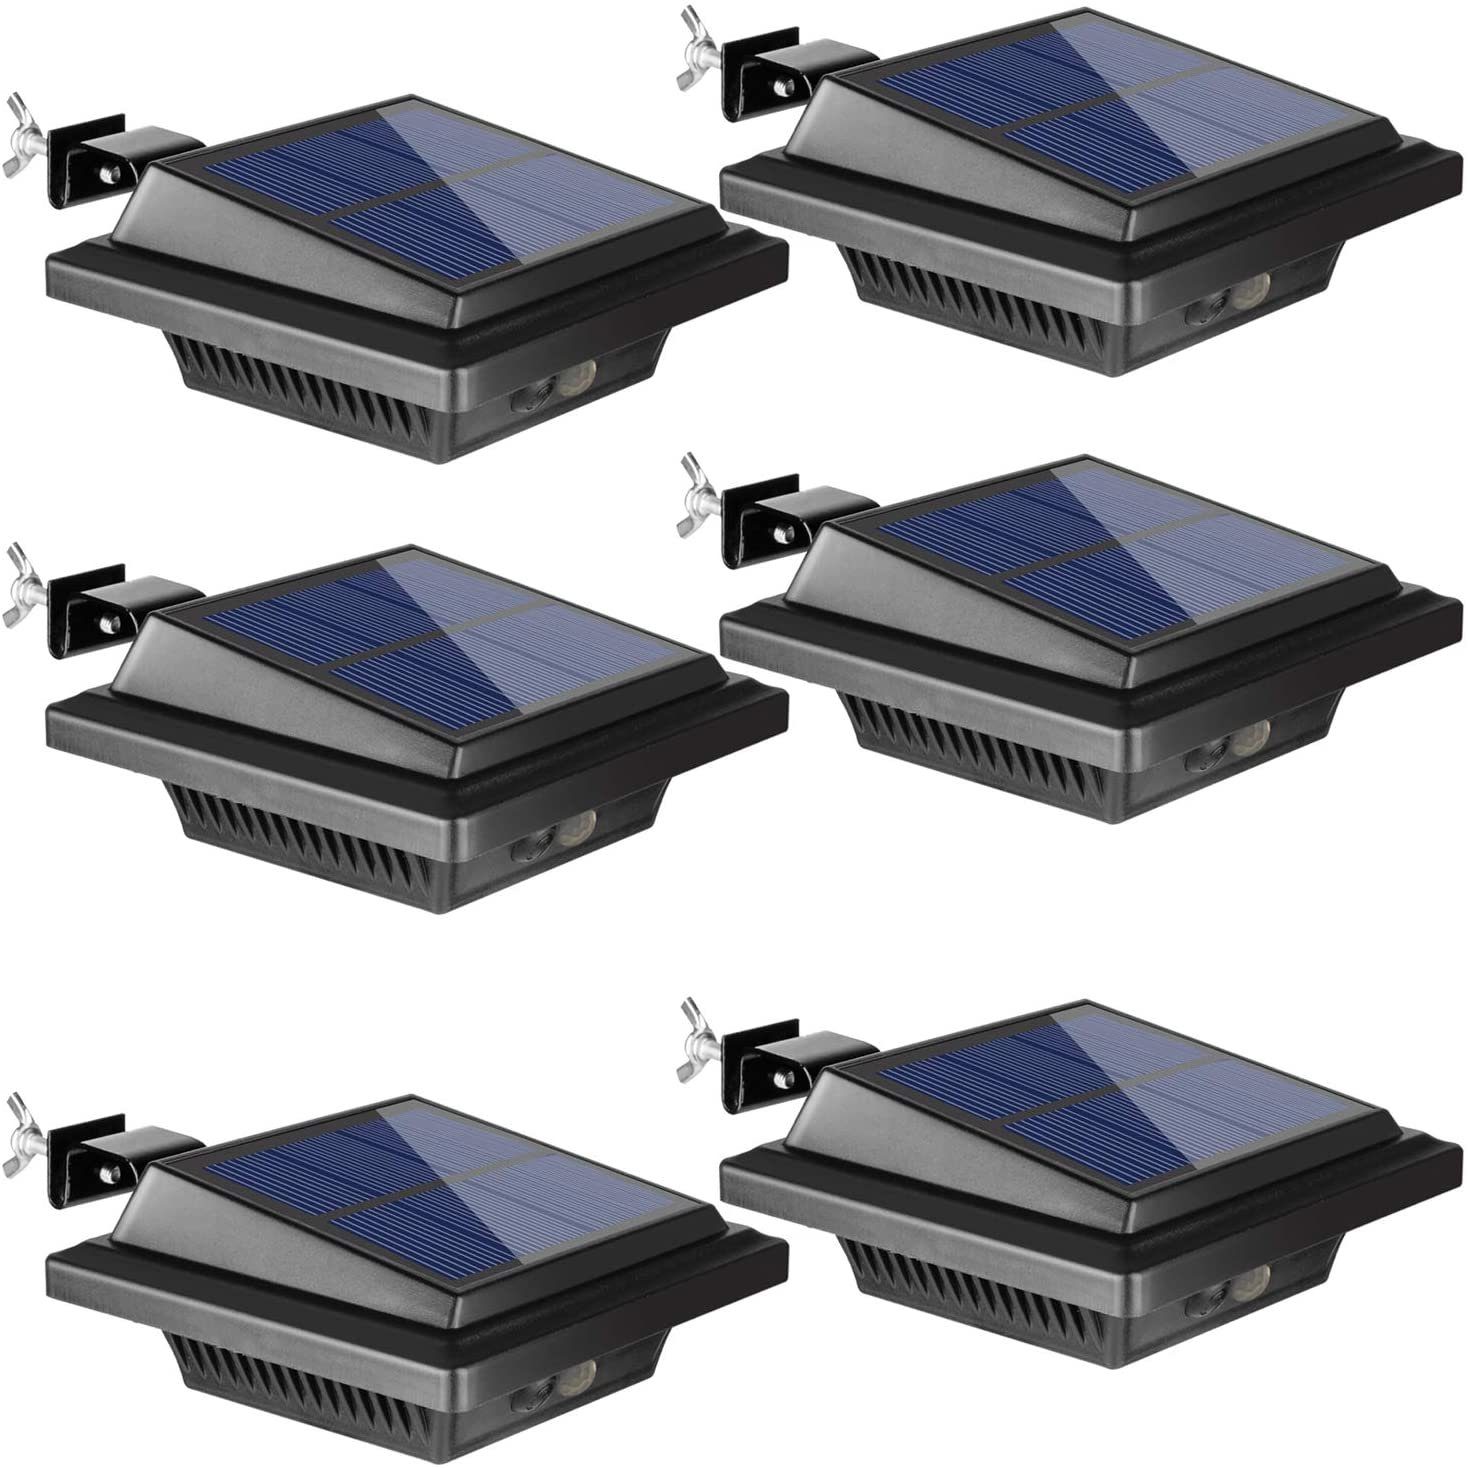 6Stk.25LEDs mit Solar Dachrinnenleuchte KEENZO Bewegungsmelder, Dachrinnenleuchte KaltWeiß